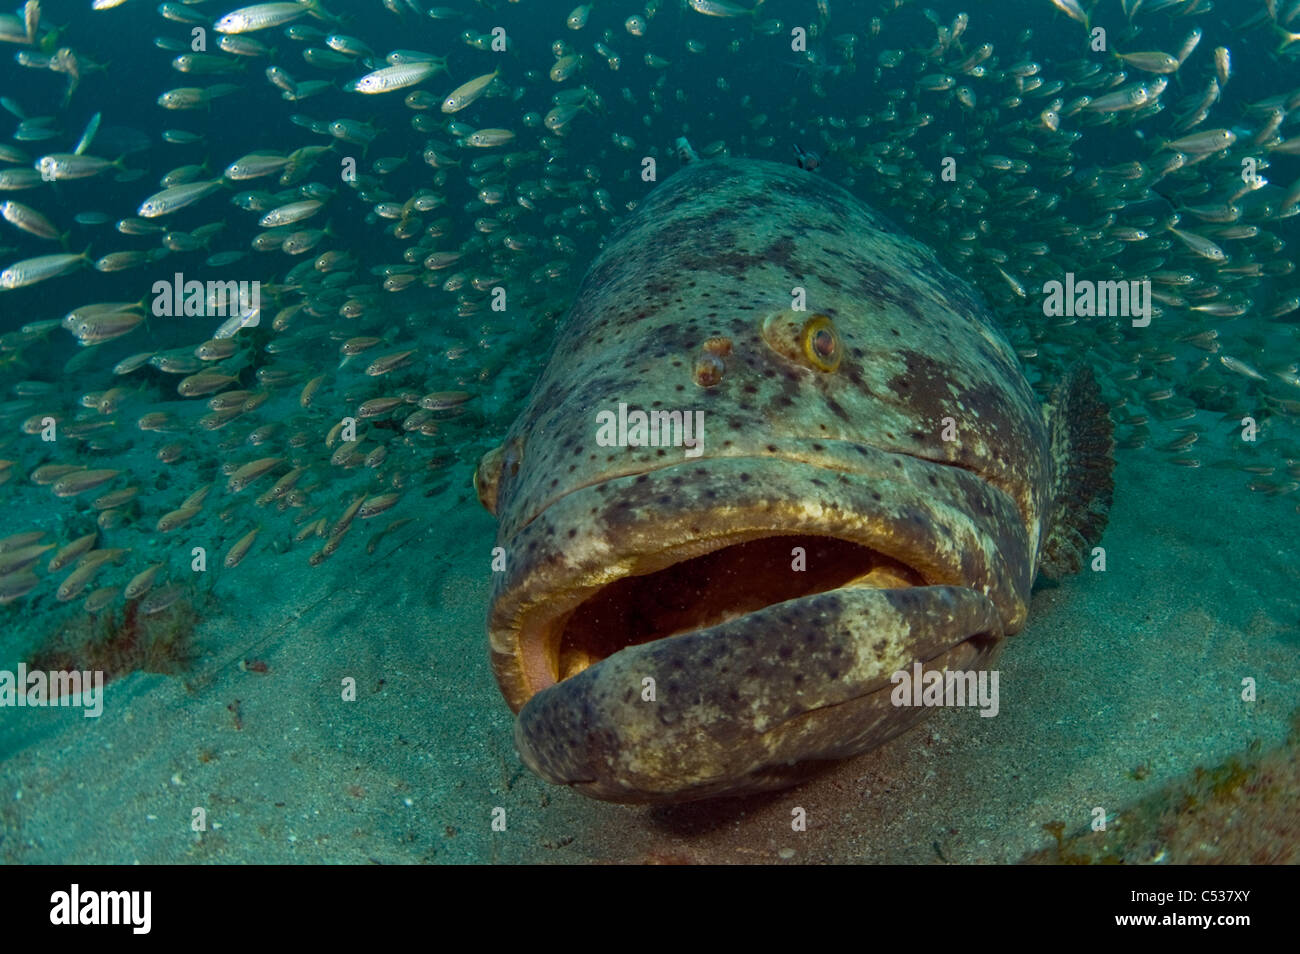 Goliath grouper Epinephelus itajara photographed underwater offshore Palm Beach, Florida during the spawning season. Endangered Stock Photo